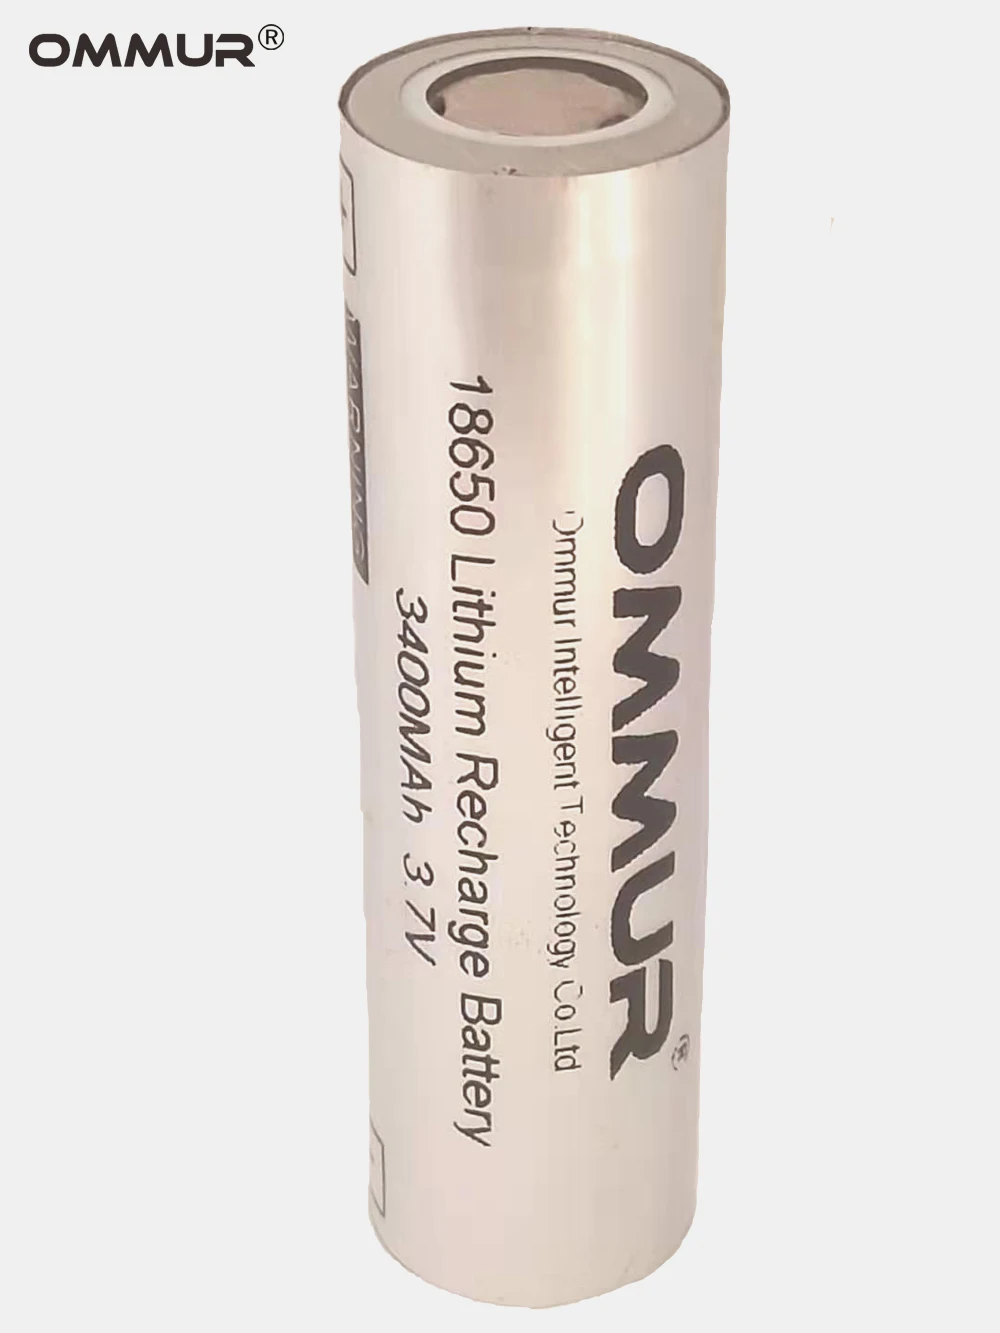 OMMUR 18650 3,7 V 3400mAh литий-ионная аккумуляторная батарея для фонарика, налобного фонаря, электронная игрушка